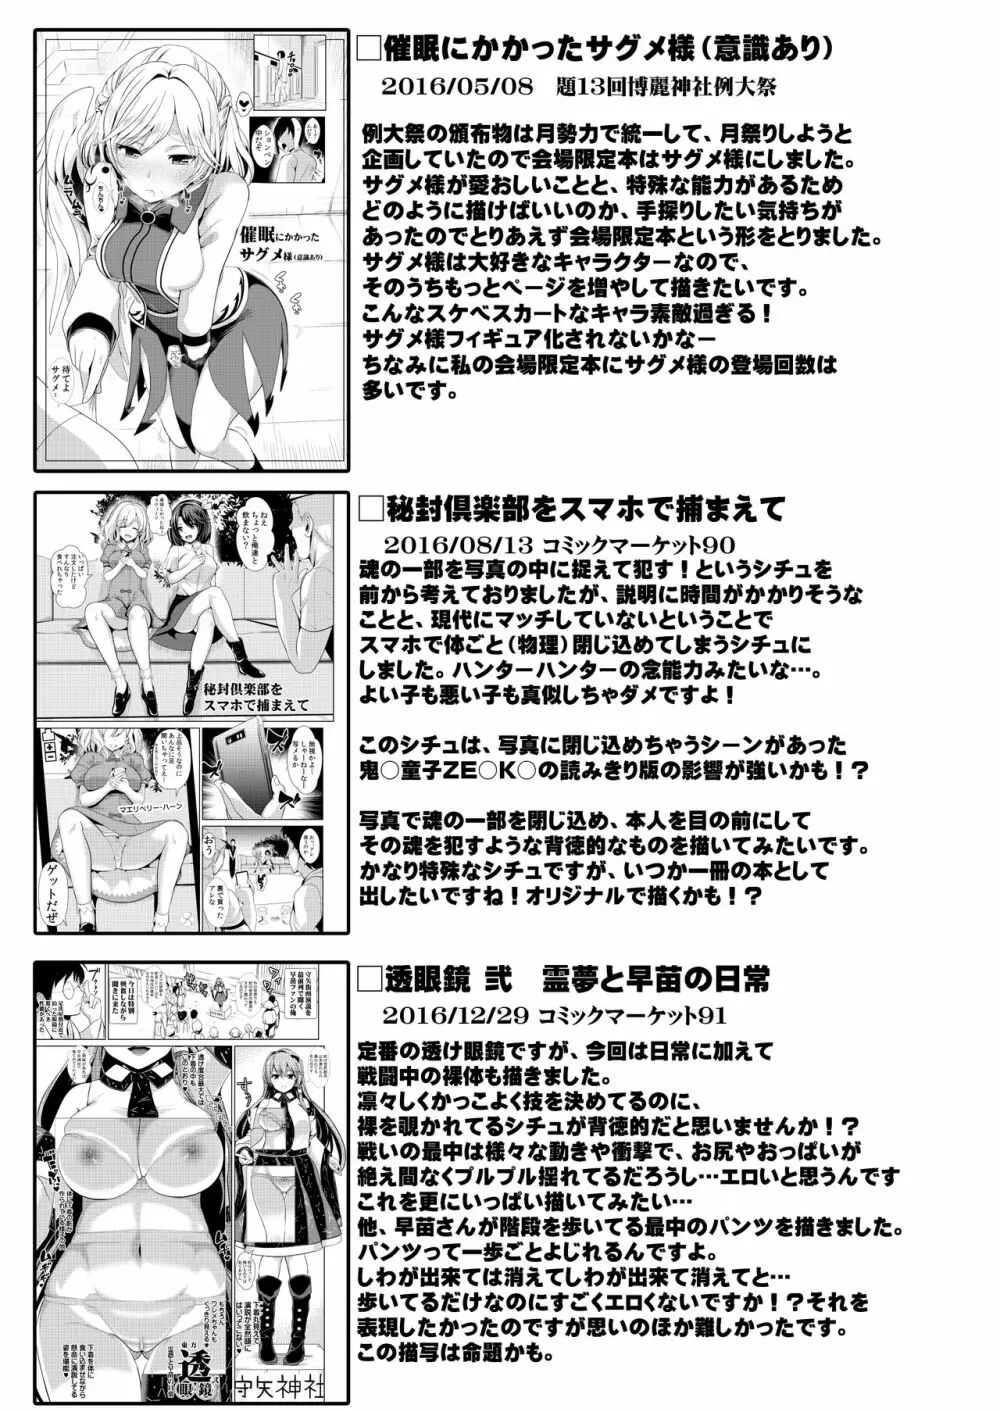 特殊シチュ短編総集編 東方シコるッ! 2 81ページ